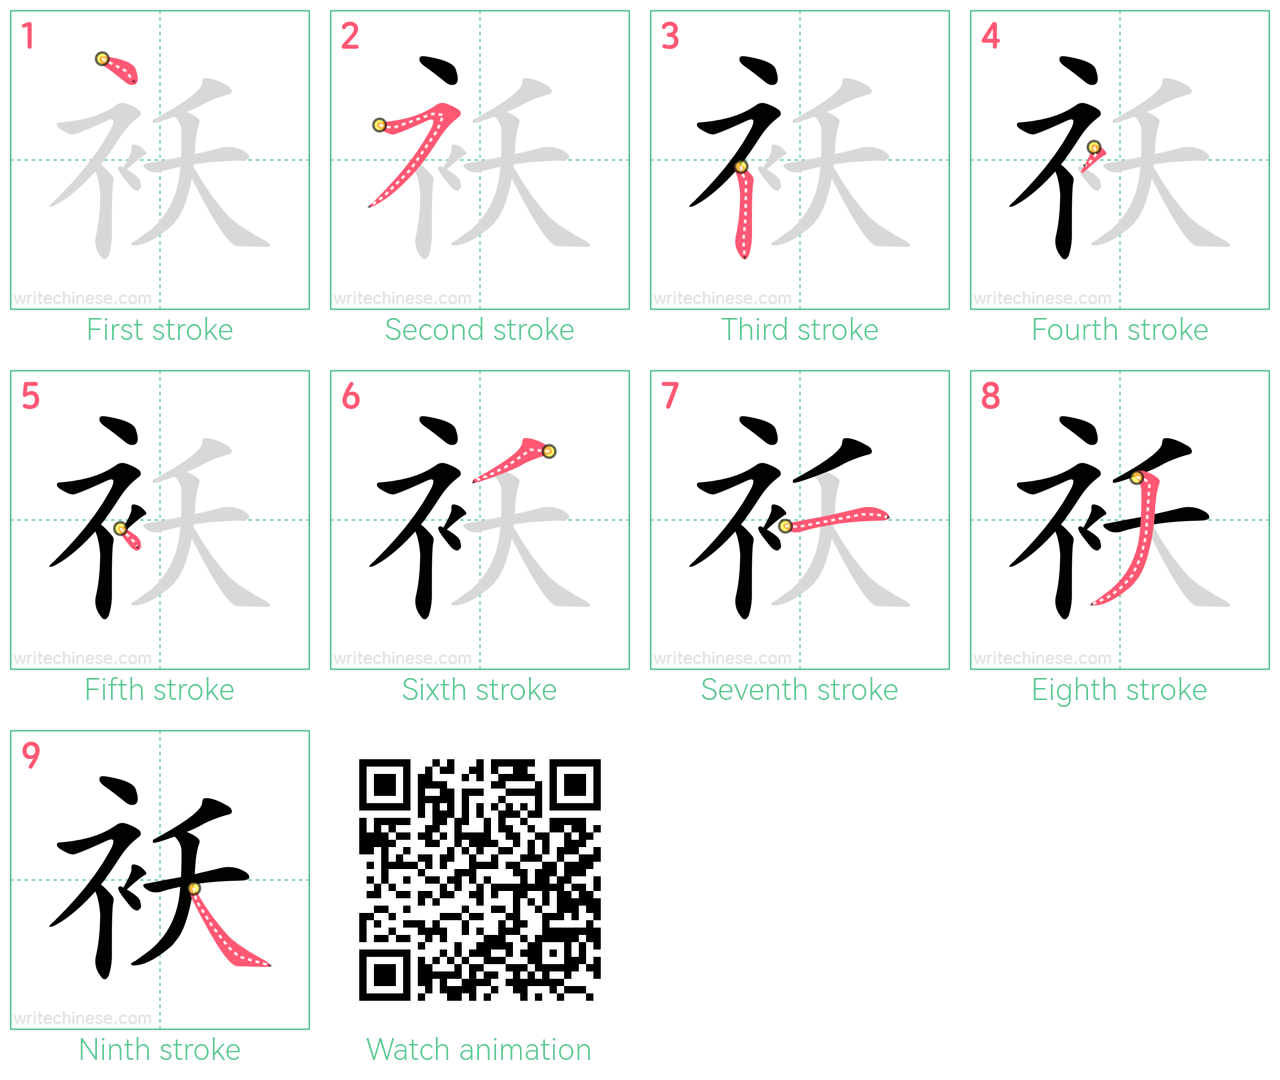 袄 step-by-step stroke order diagrams